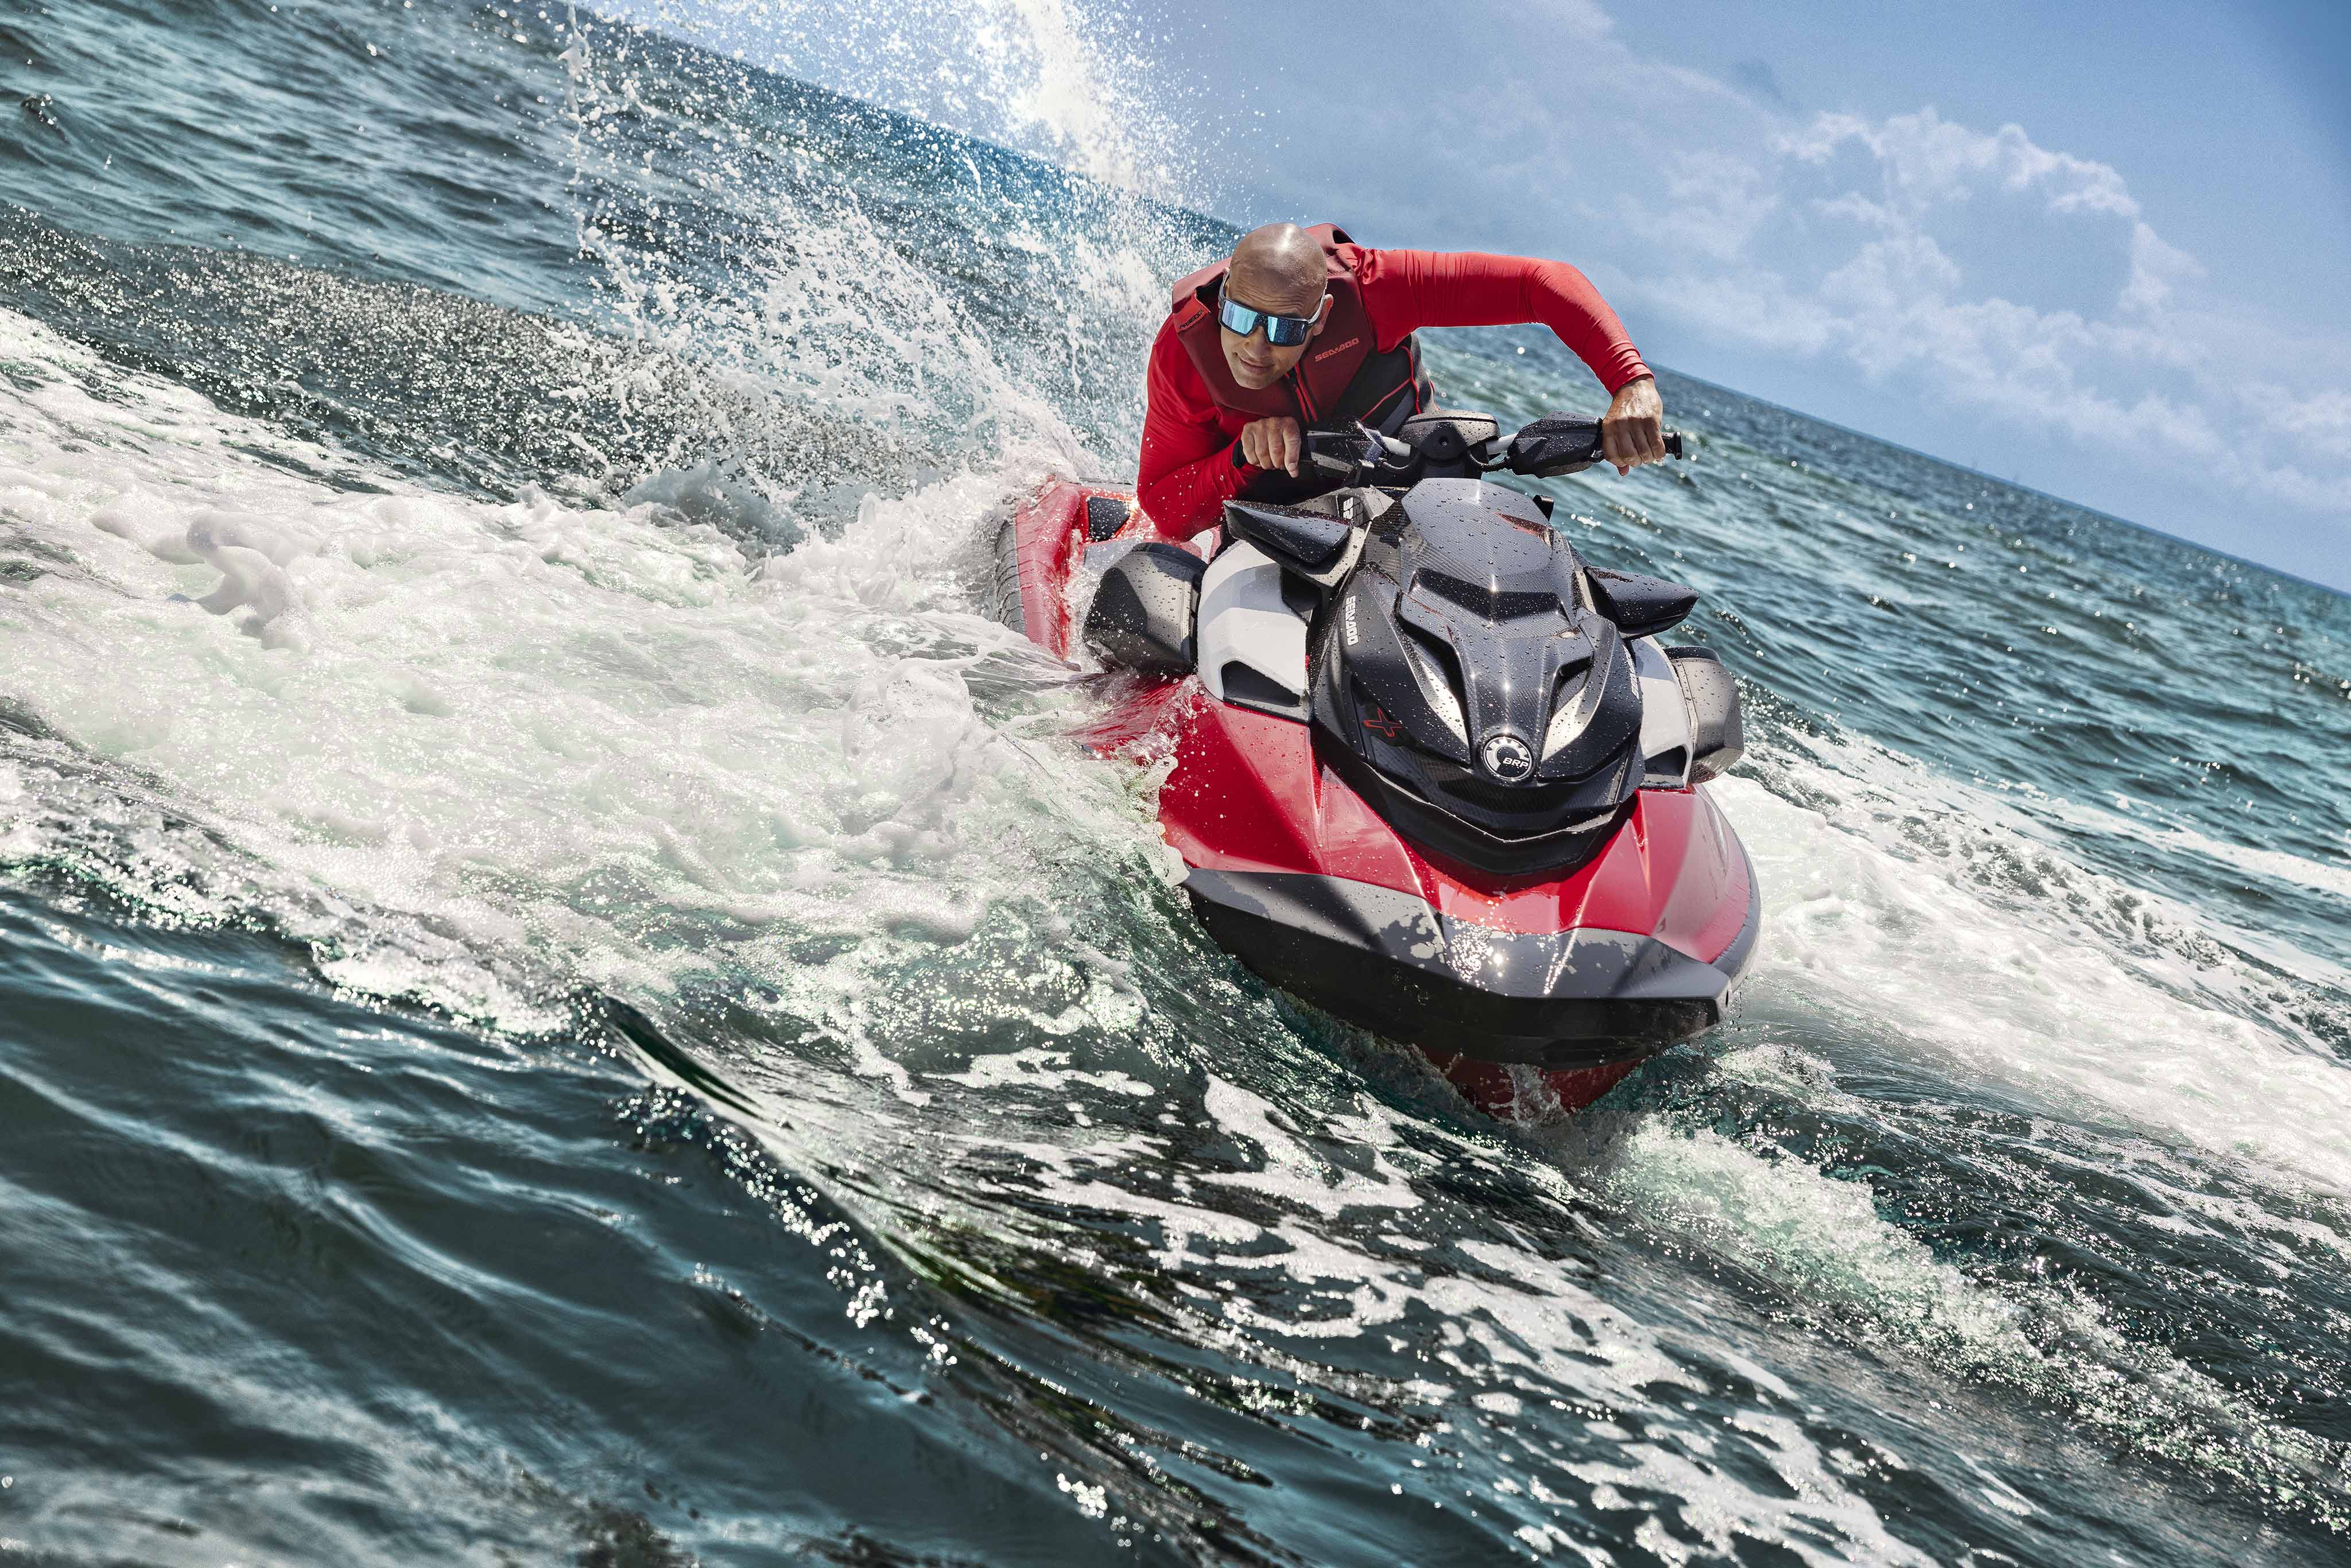  Mies ajaa täydellä vauhdilla korkean suorituskyvyn Sea-Doo RXP-X vesiskootterillaan